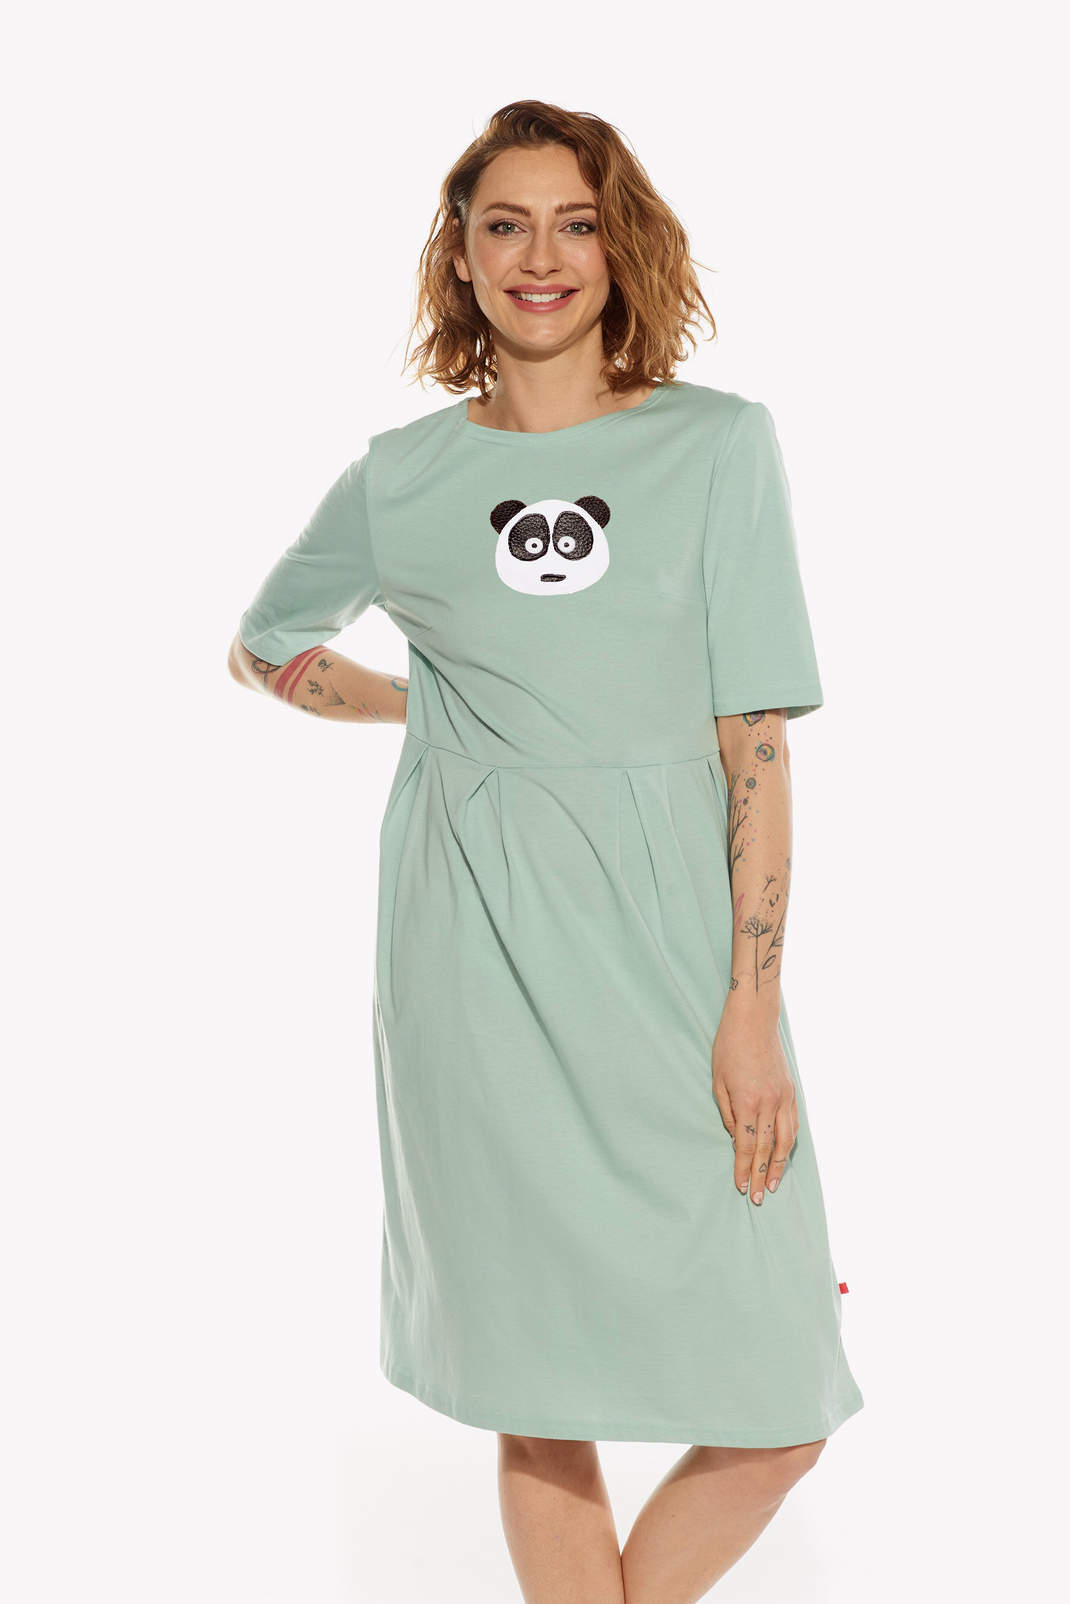 Dresses with panda bear